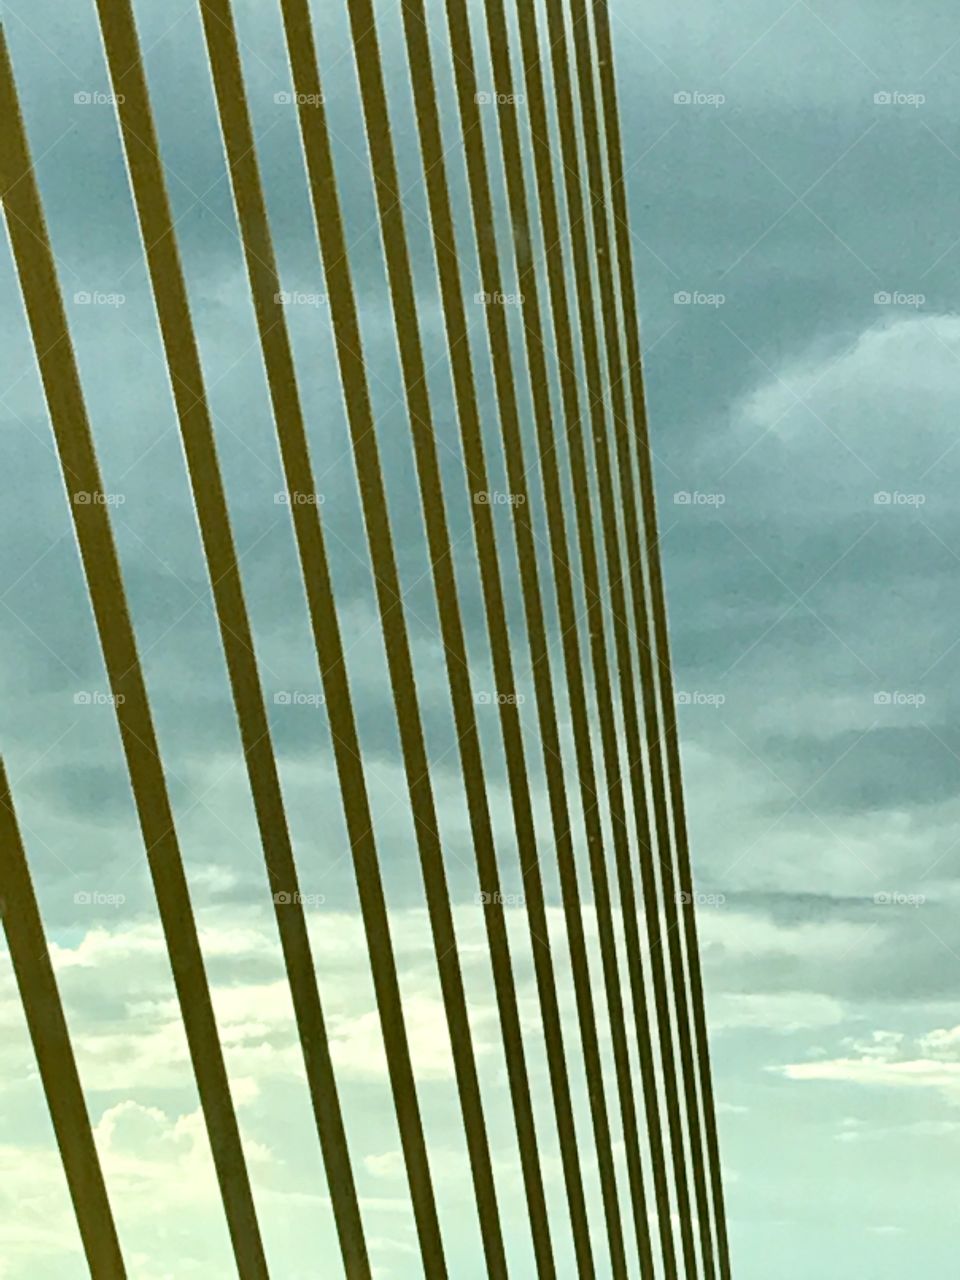 Symmetry on Bridge